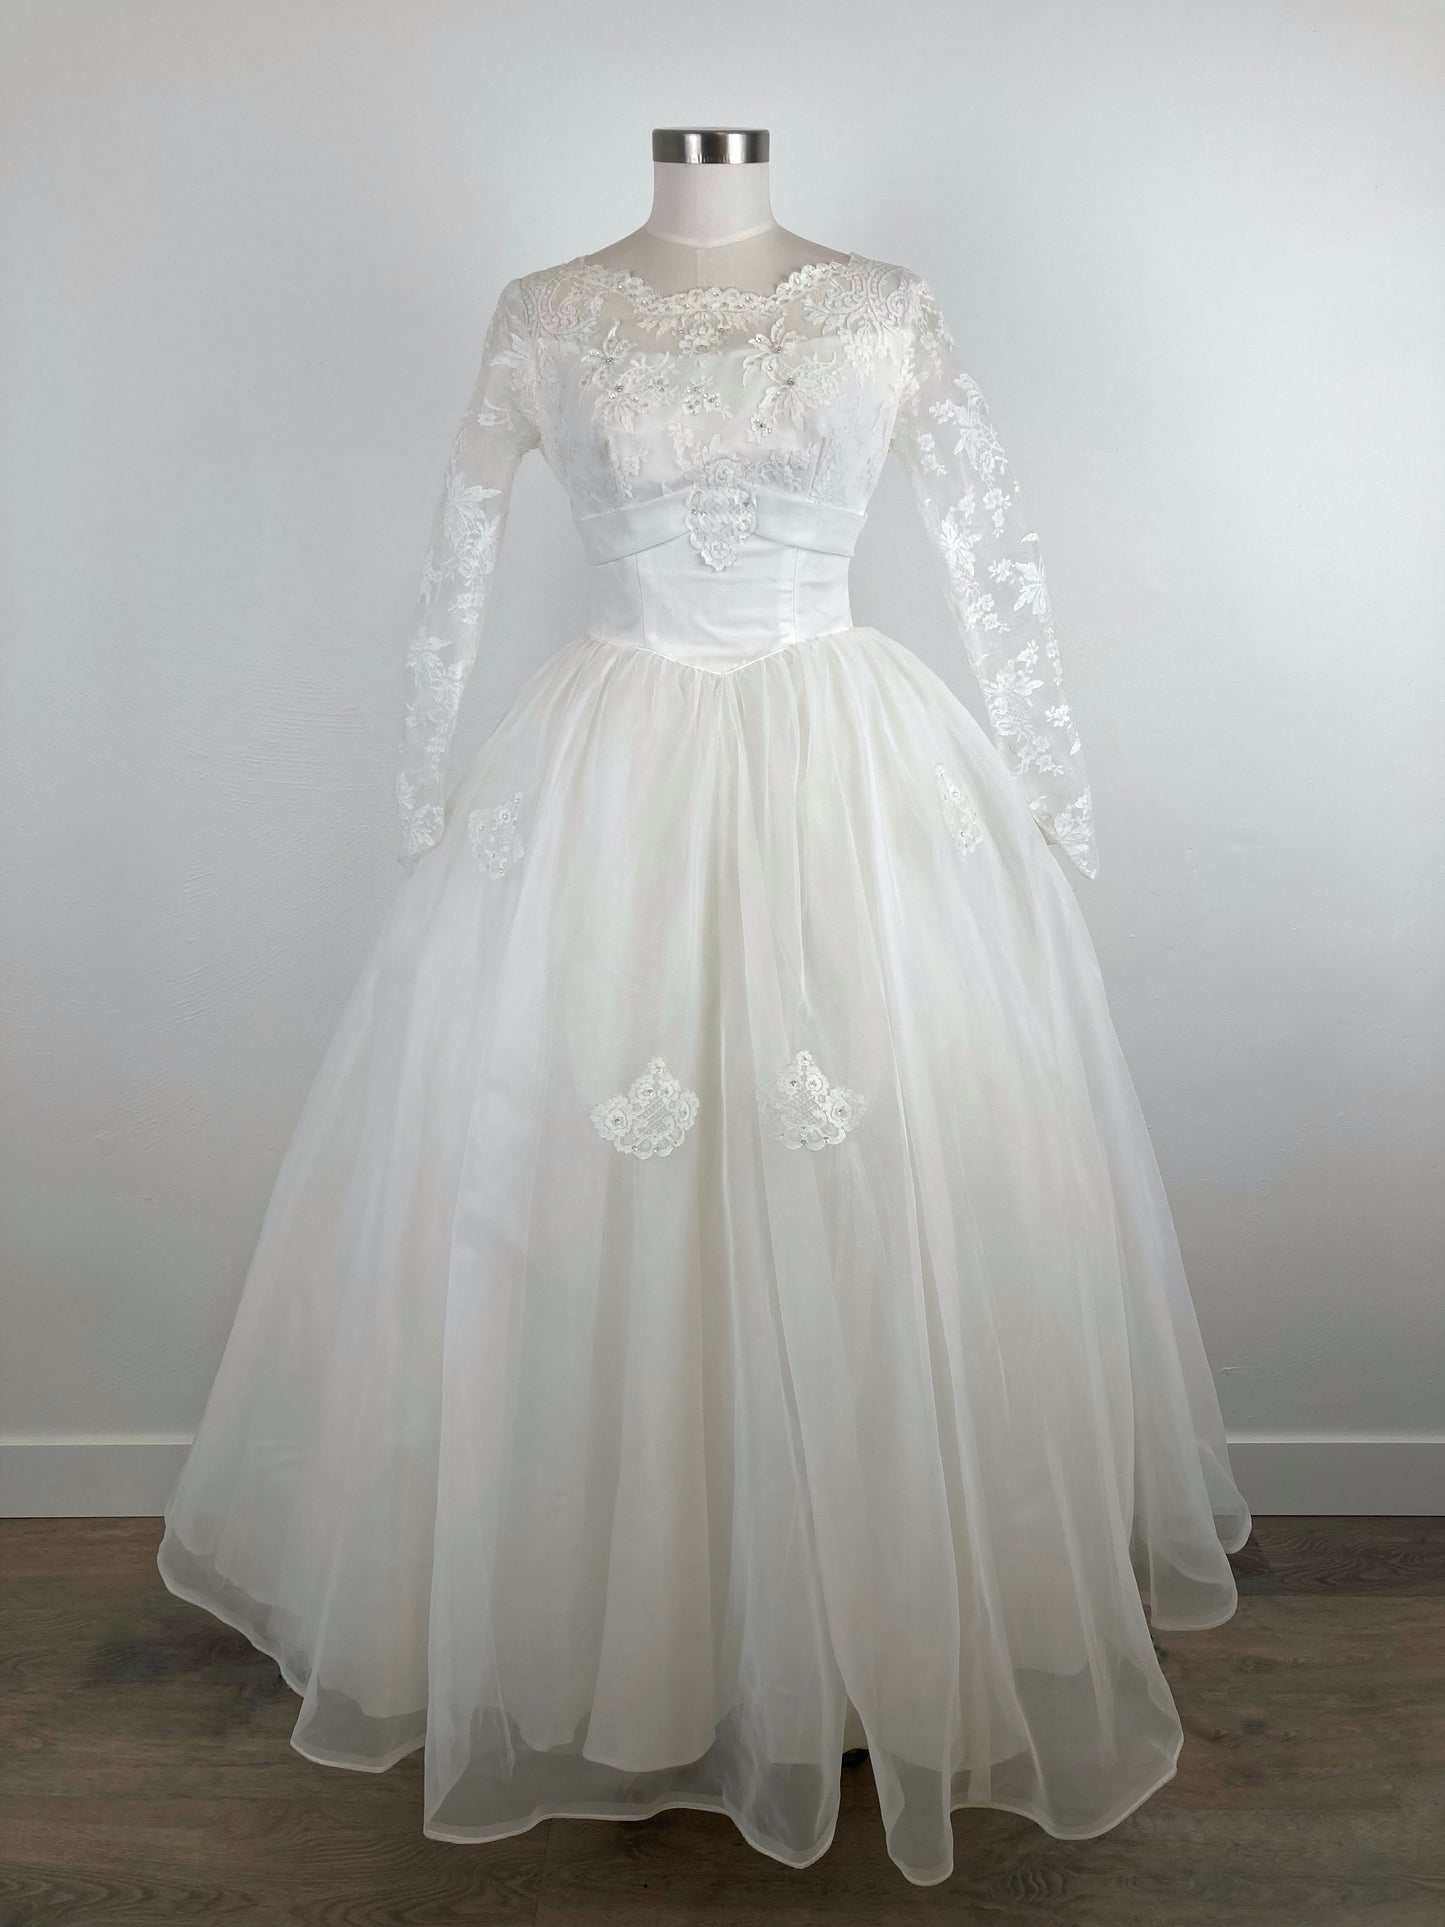 1964 Sweetheart Wedding Dress, "Marilyn", Size S